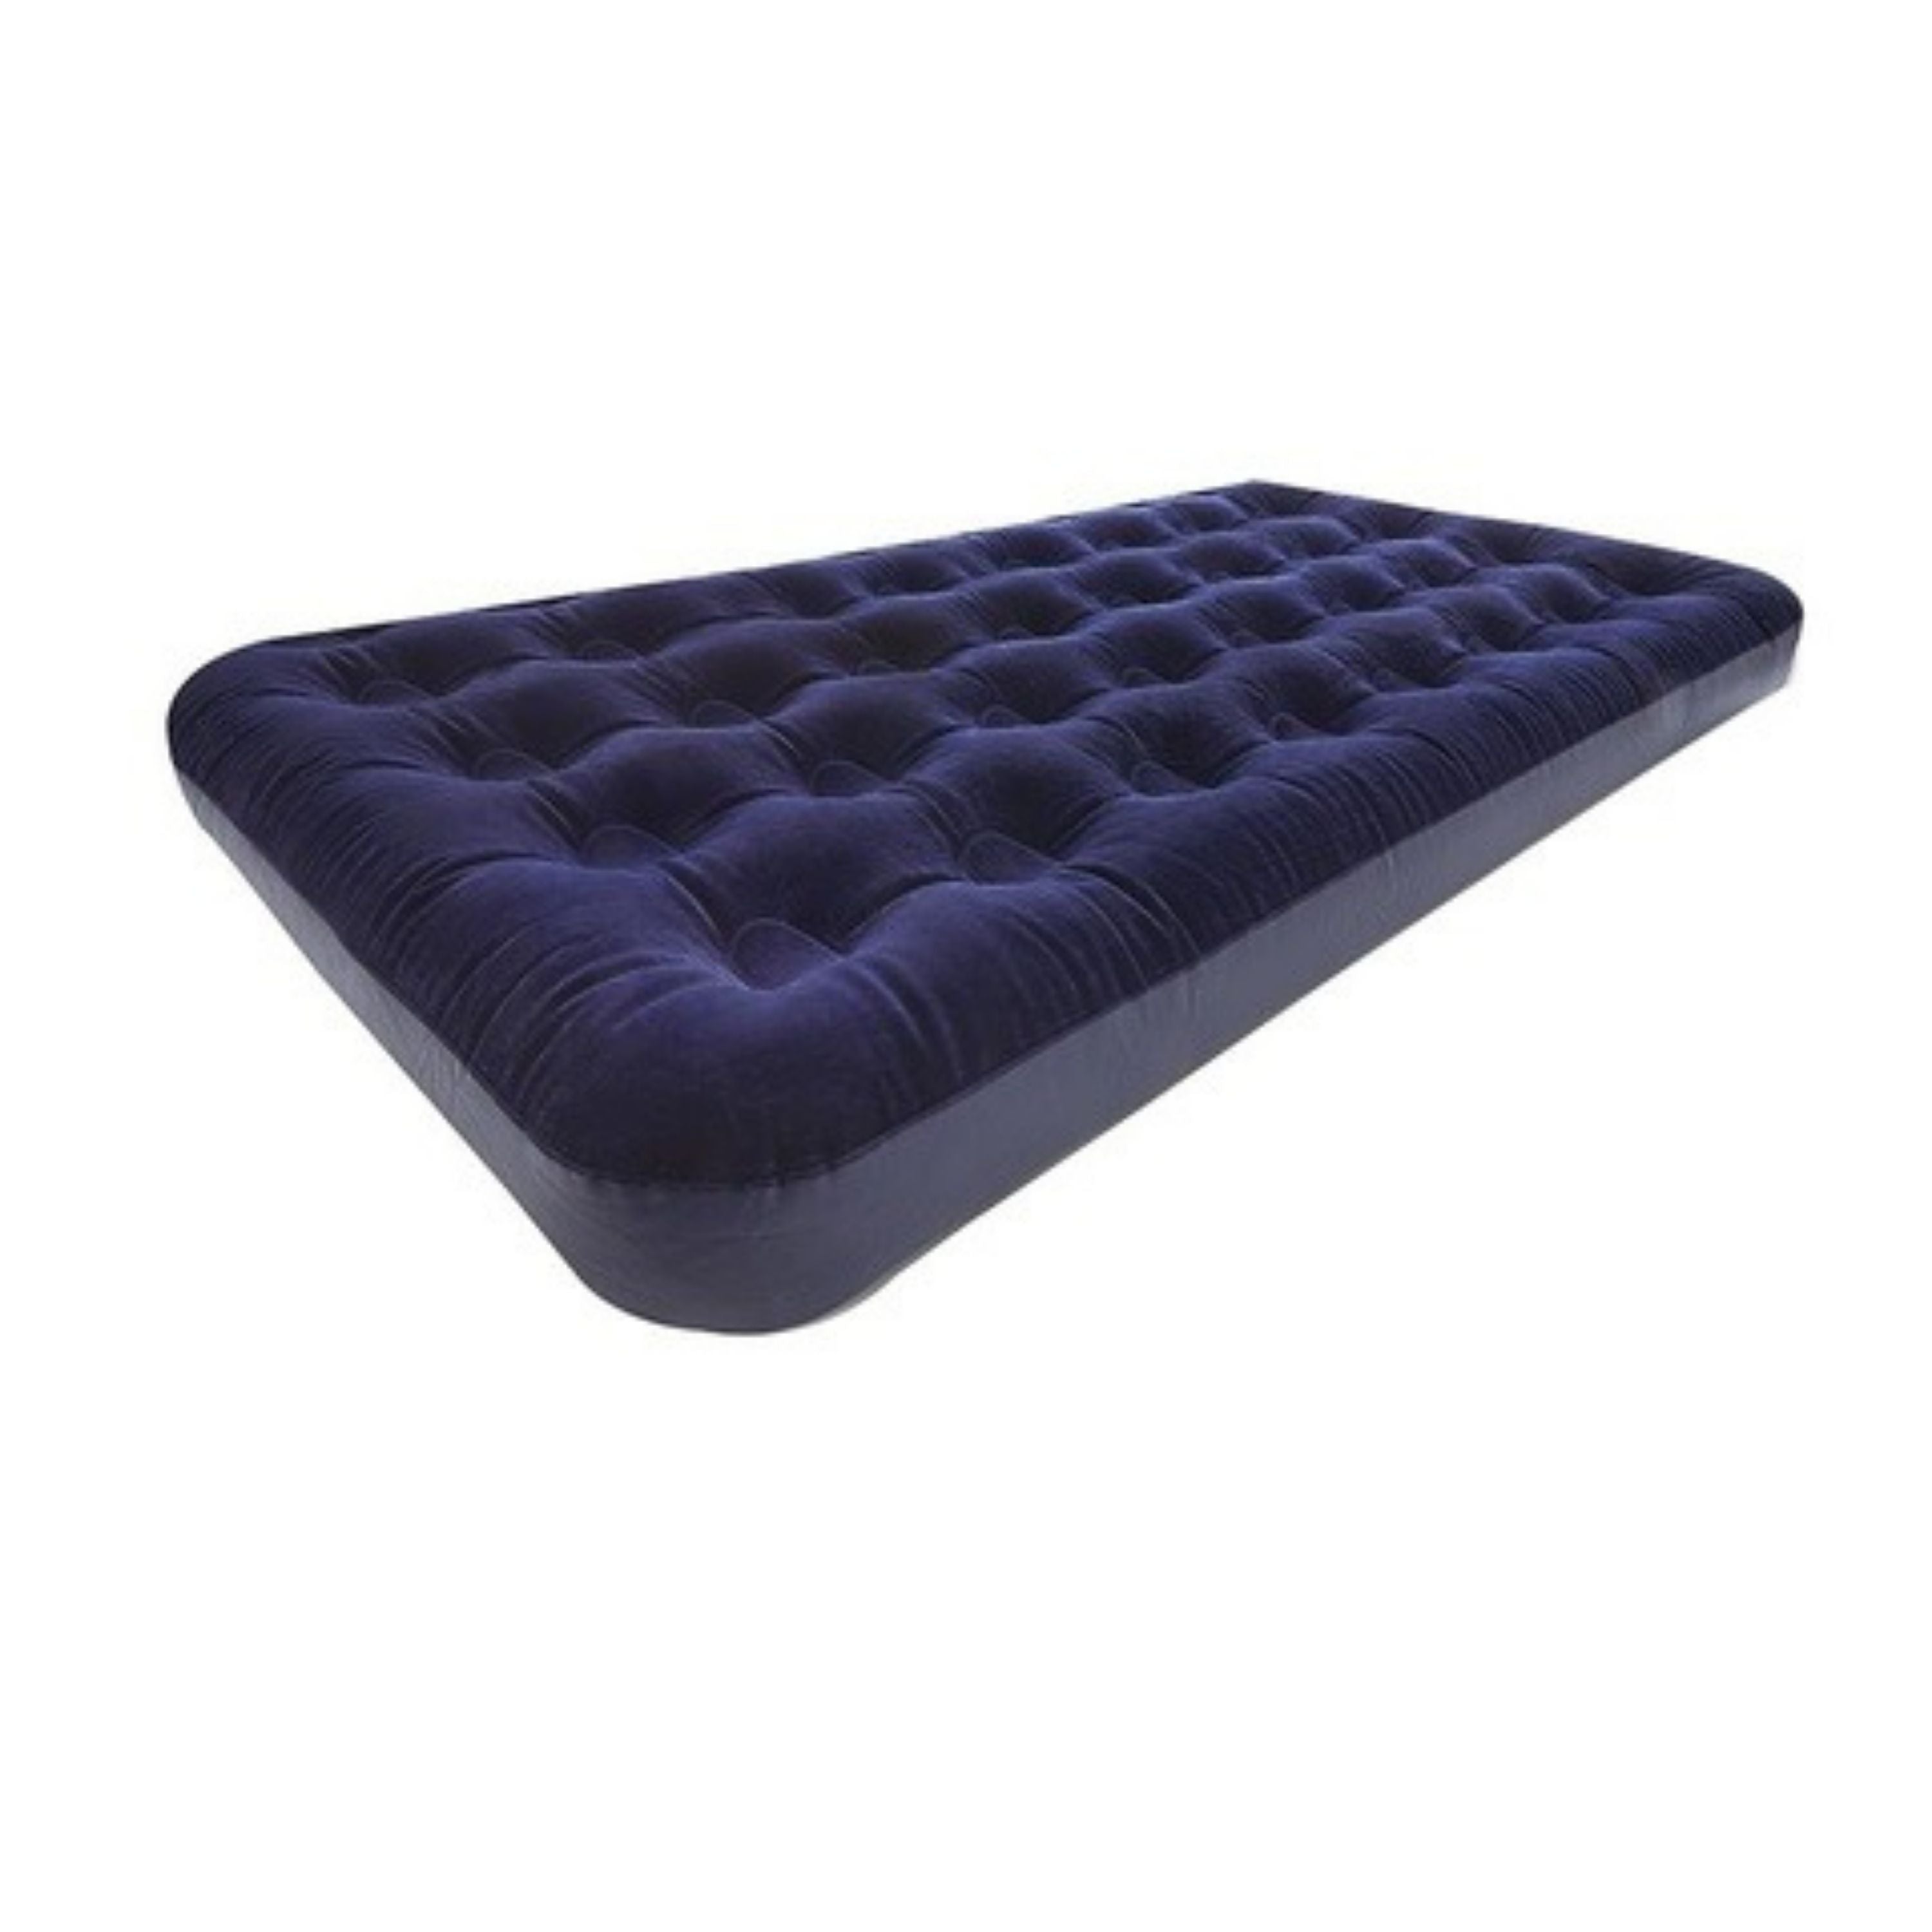 Air mattress - double